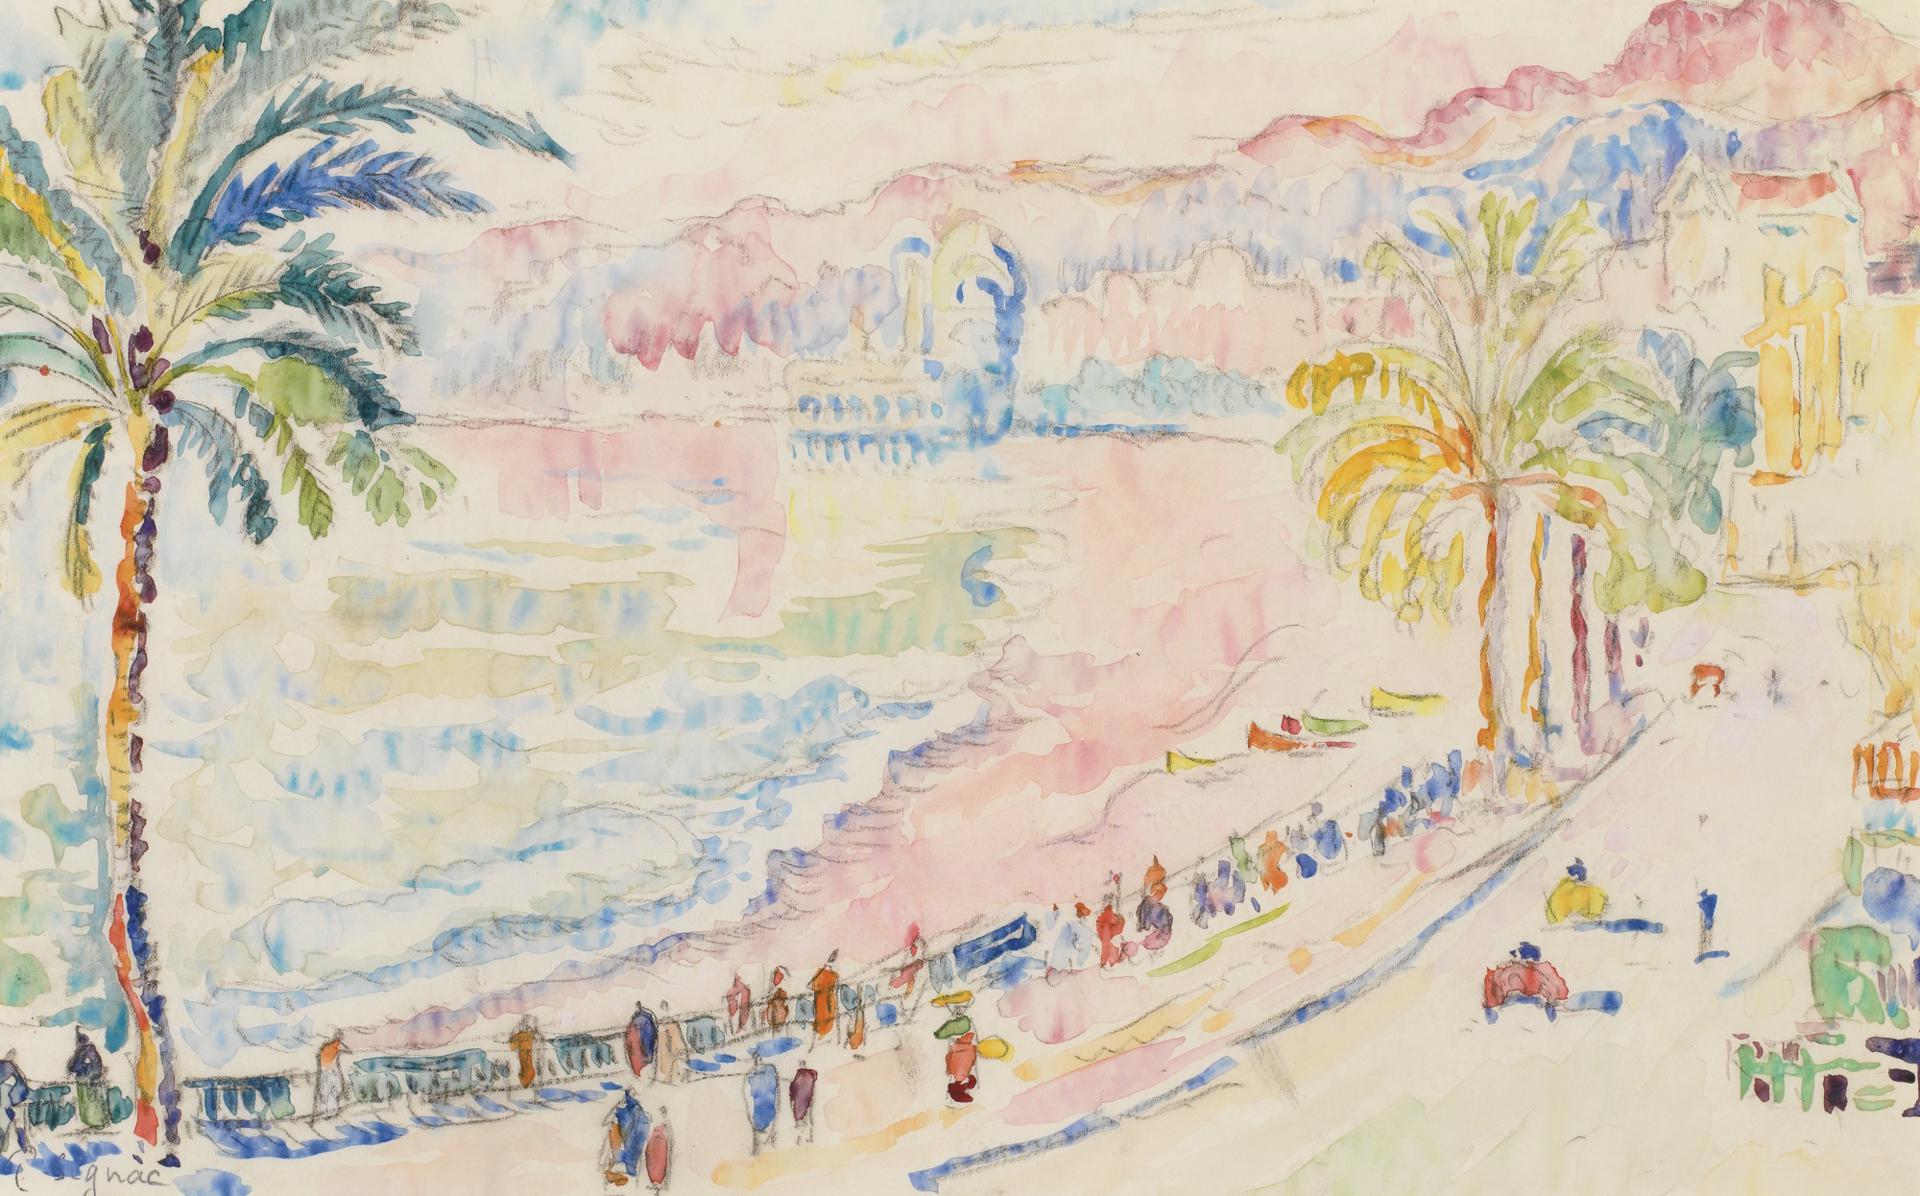 0022_西涅克_西涅克绘画作品集-Paul Signac-Nice La Promenade des Anglais_2000x1246PX_TIF_180DPI_7.3_0